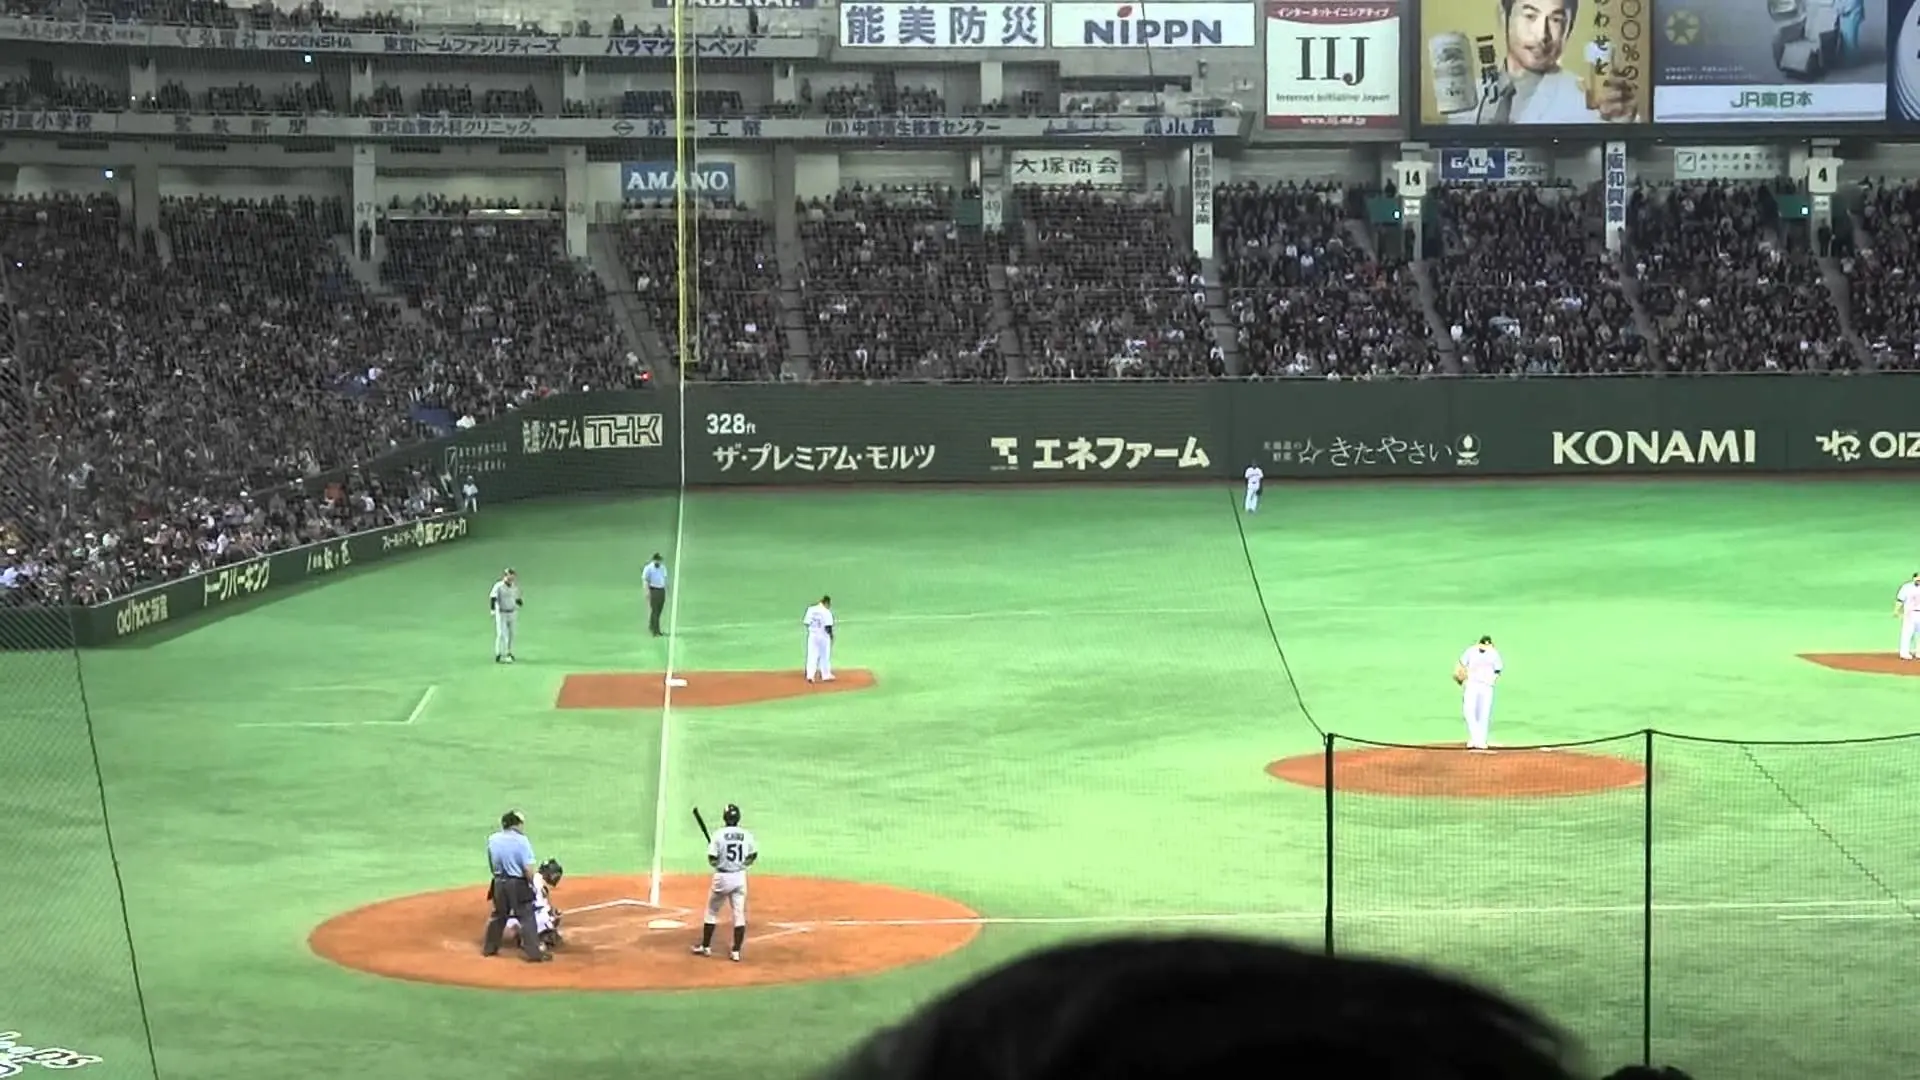 Tokio Dome sediará abertura da temporada regular da MLB em 2019